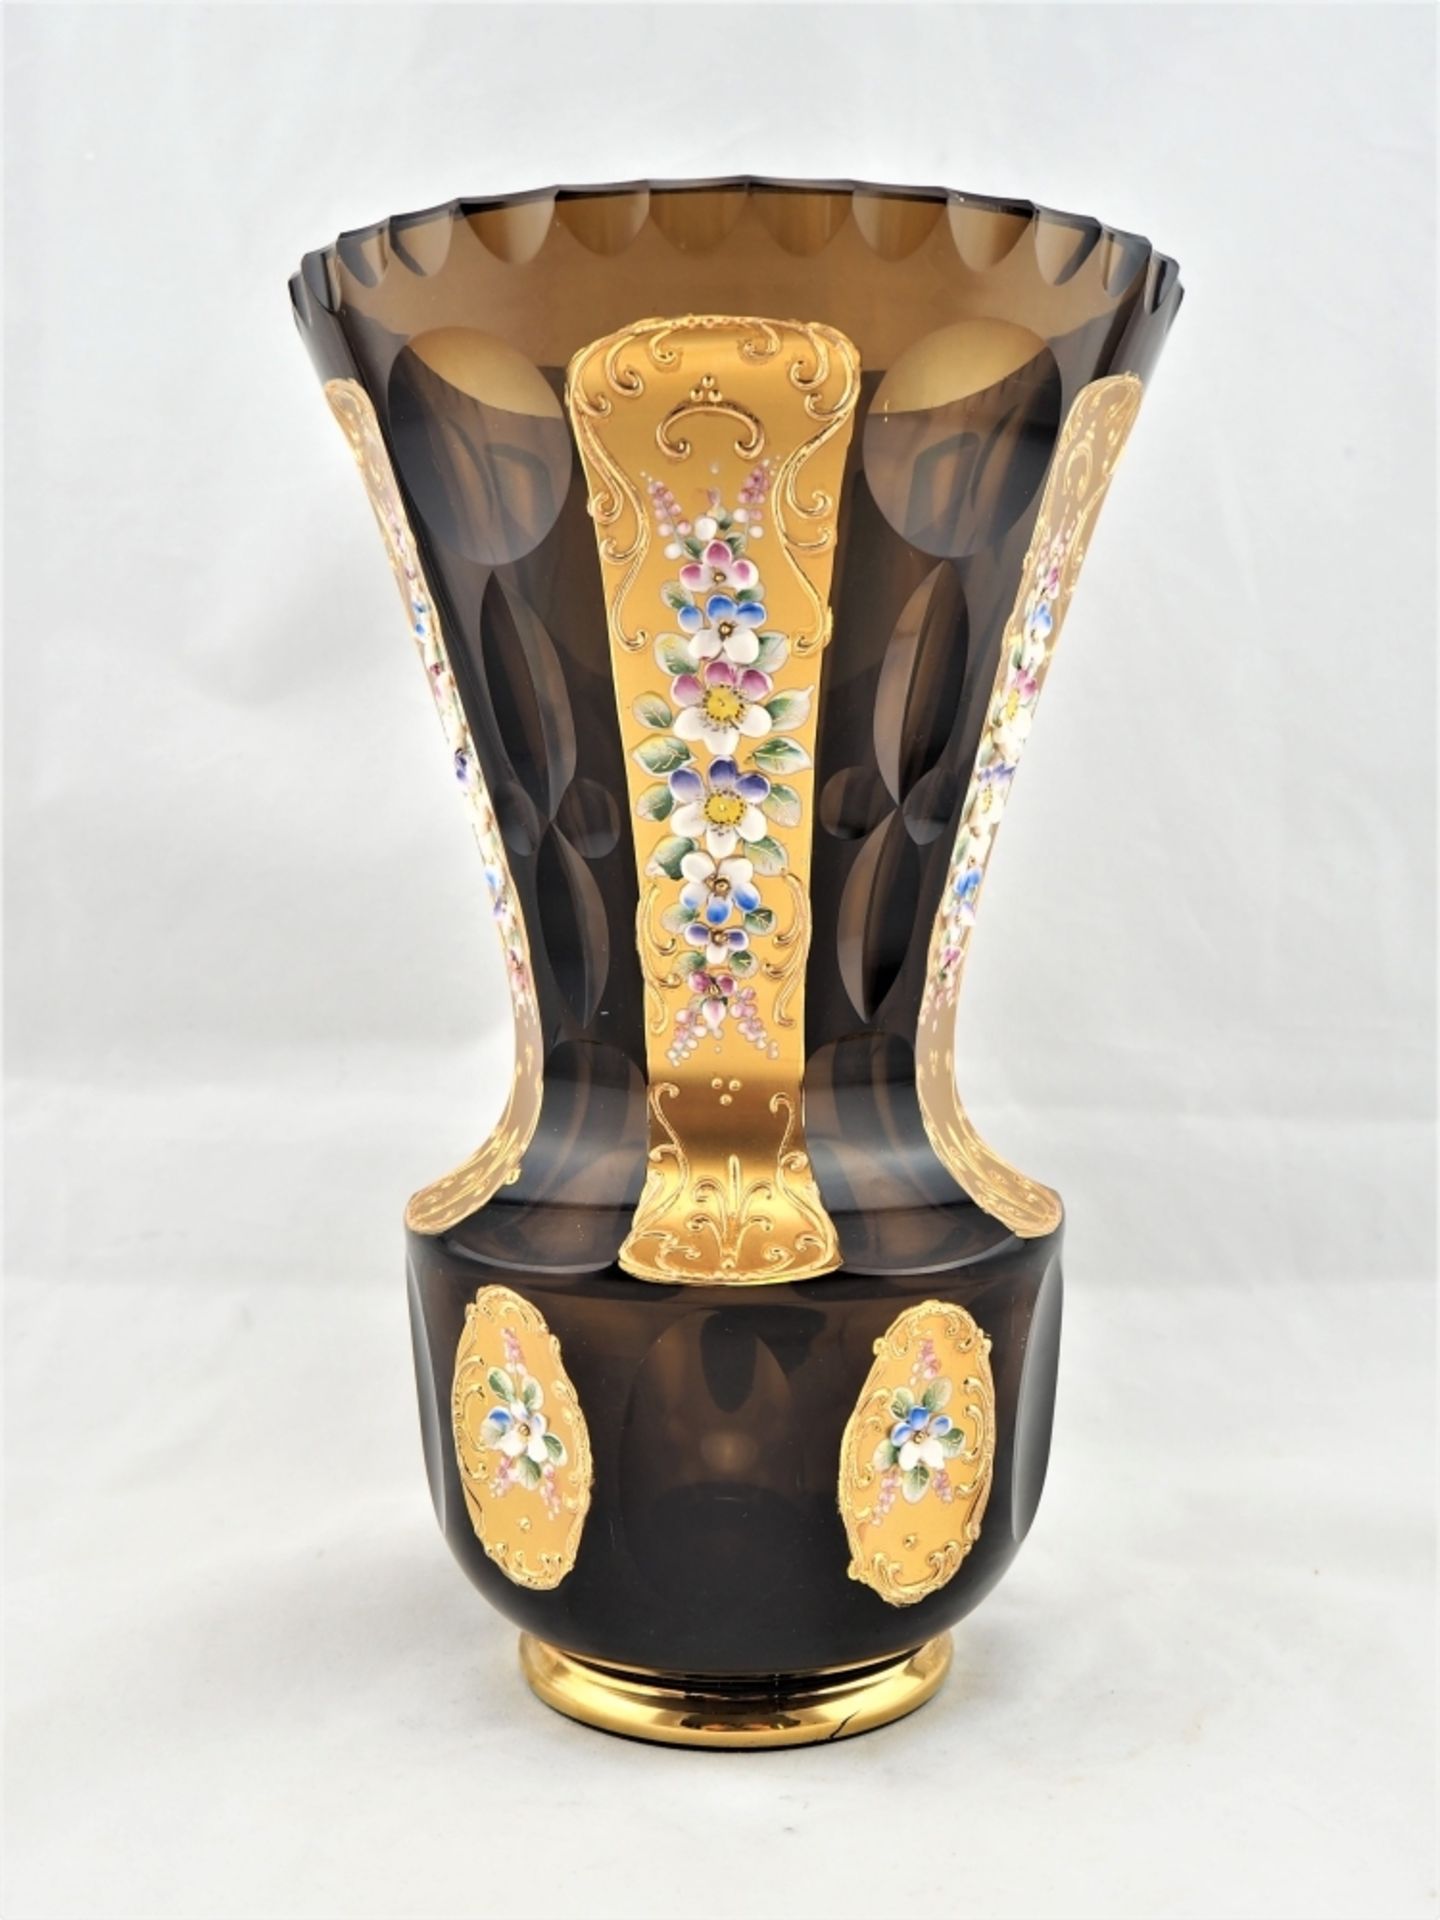 Vase, geschliffen, mit reicher Emailleverzierungaus braunem Glas, mit aufwändigem Schlif